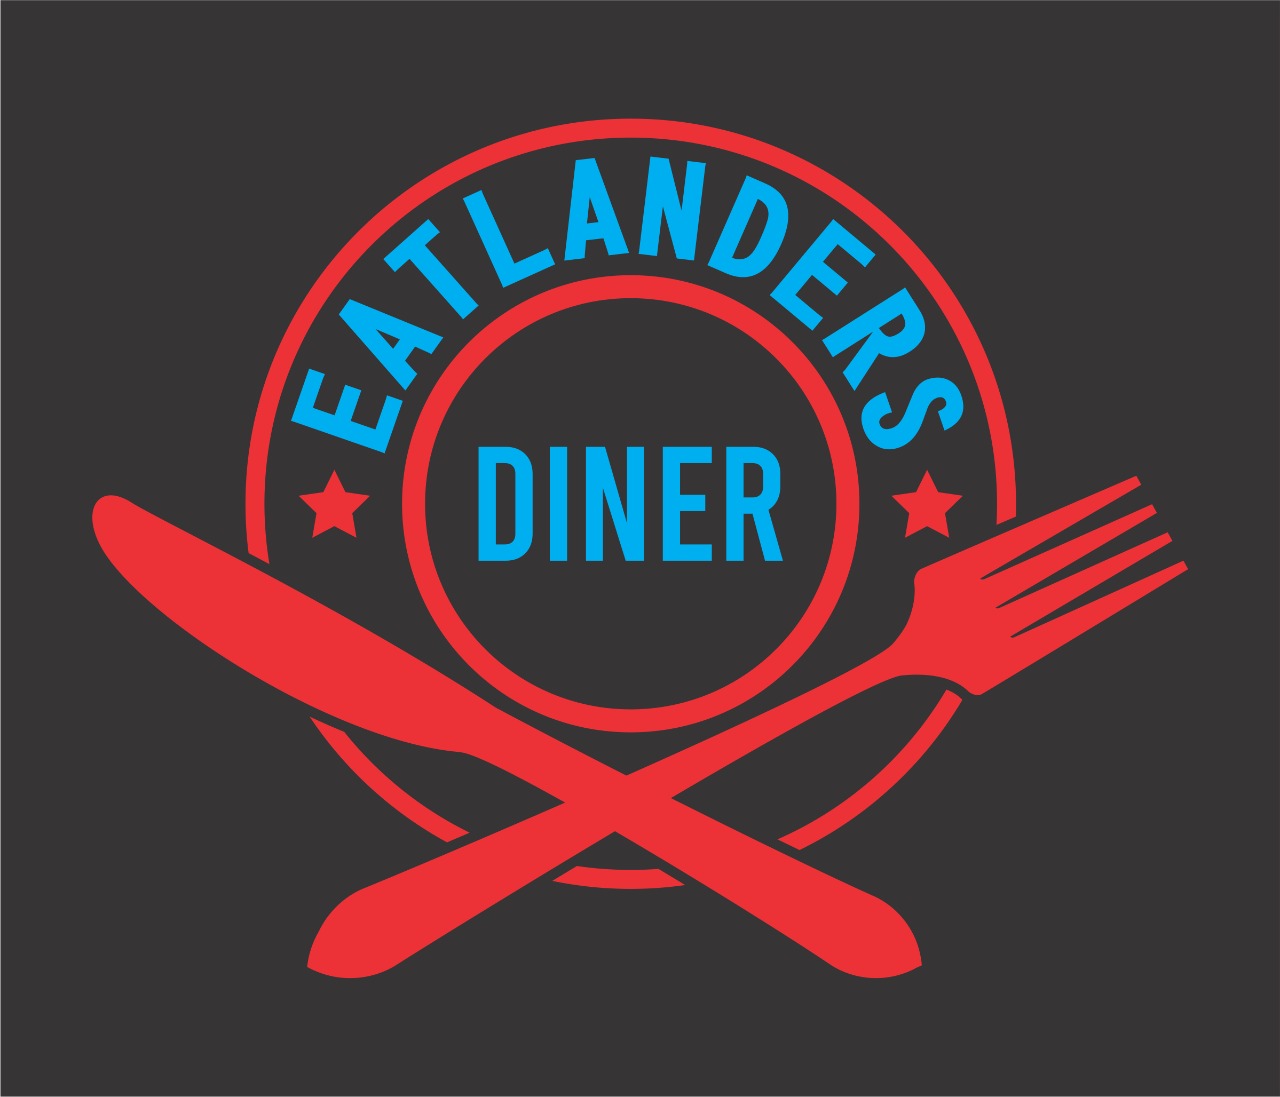 Eatlanders